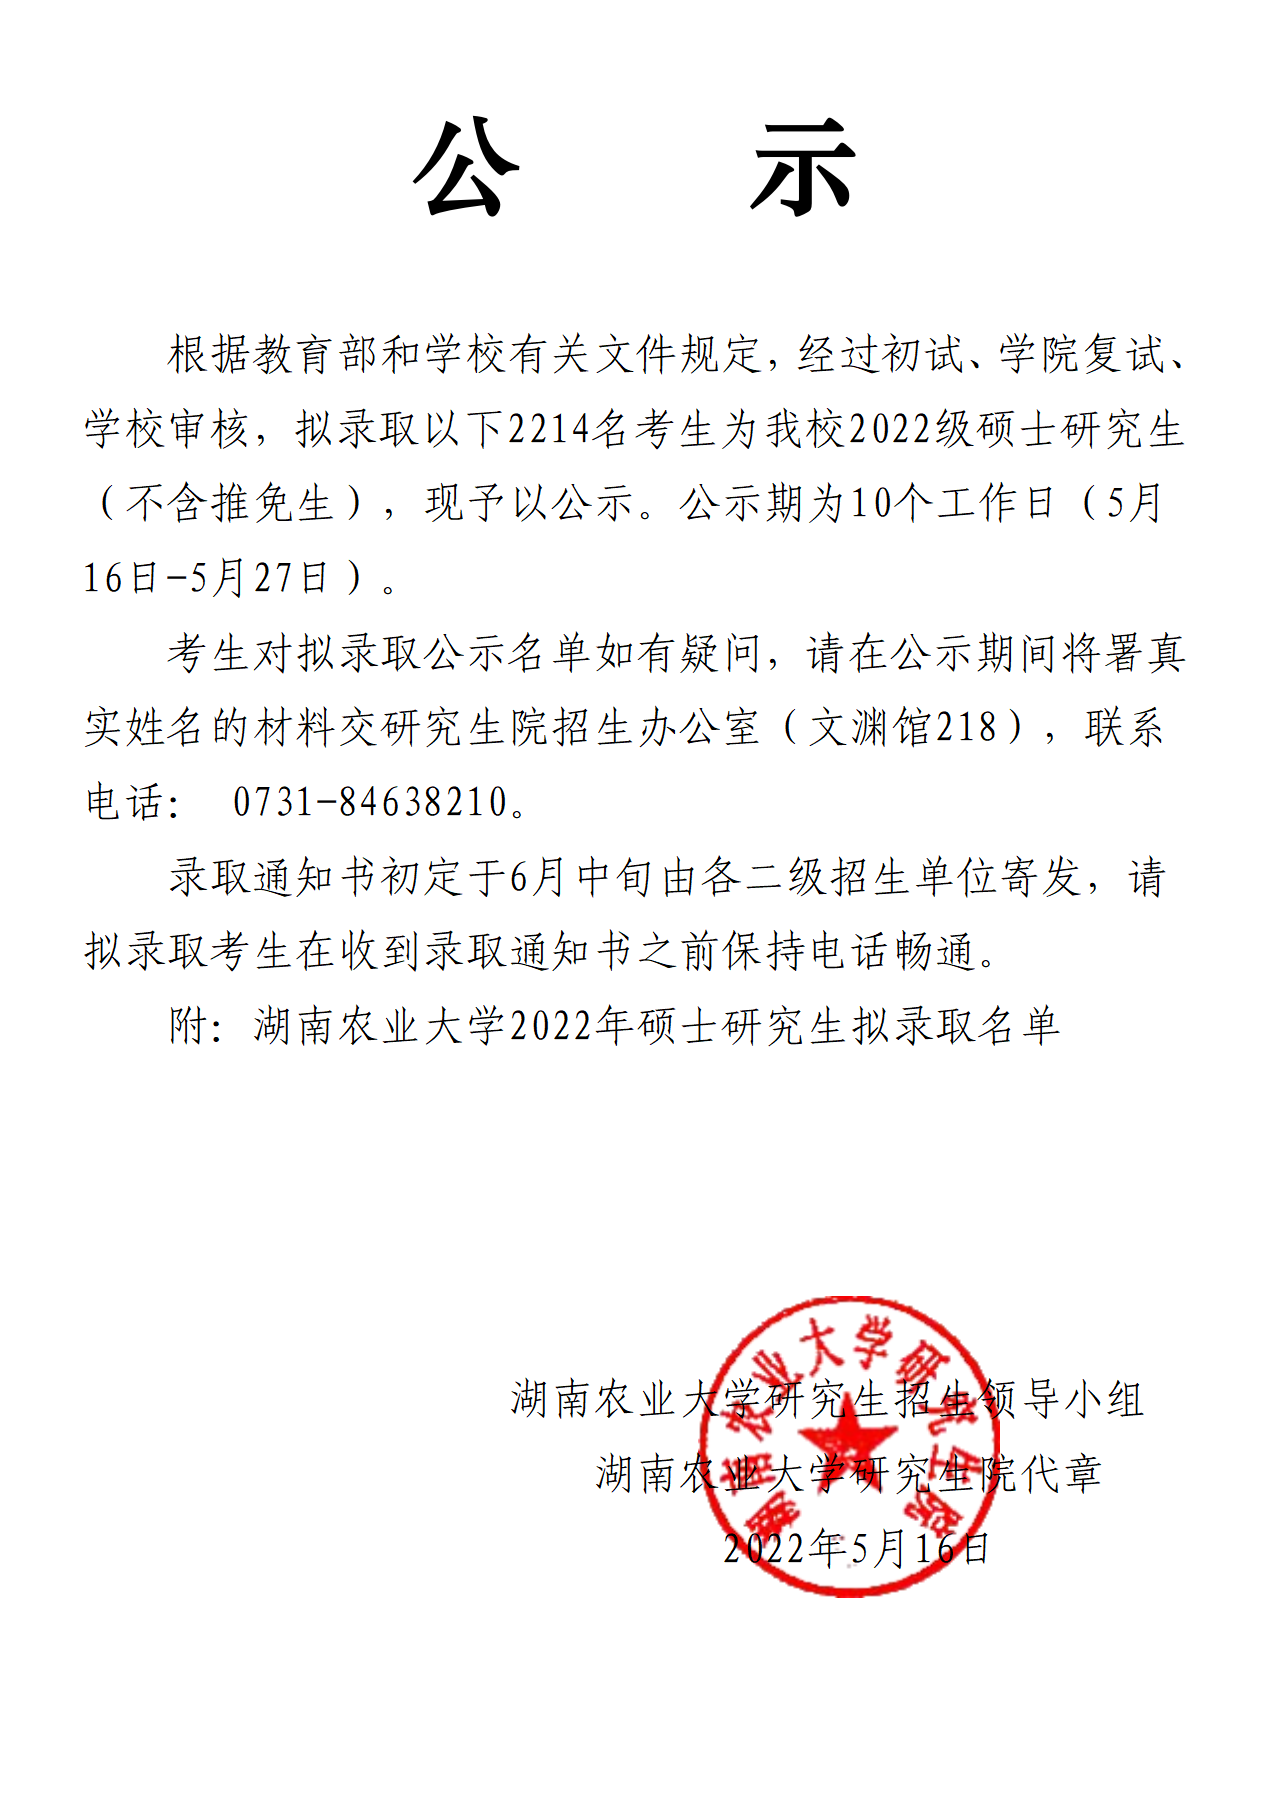 湖南农业大学2021年硕士研究生拟录取名单公示_01(1).png